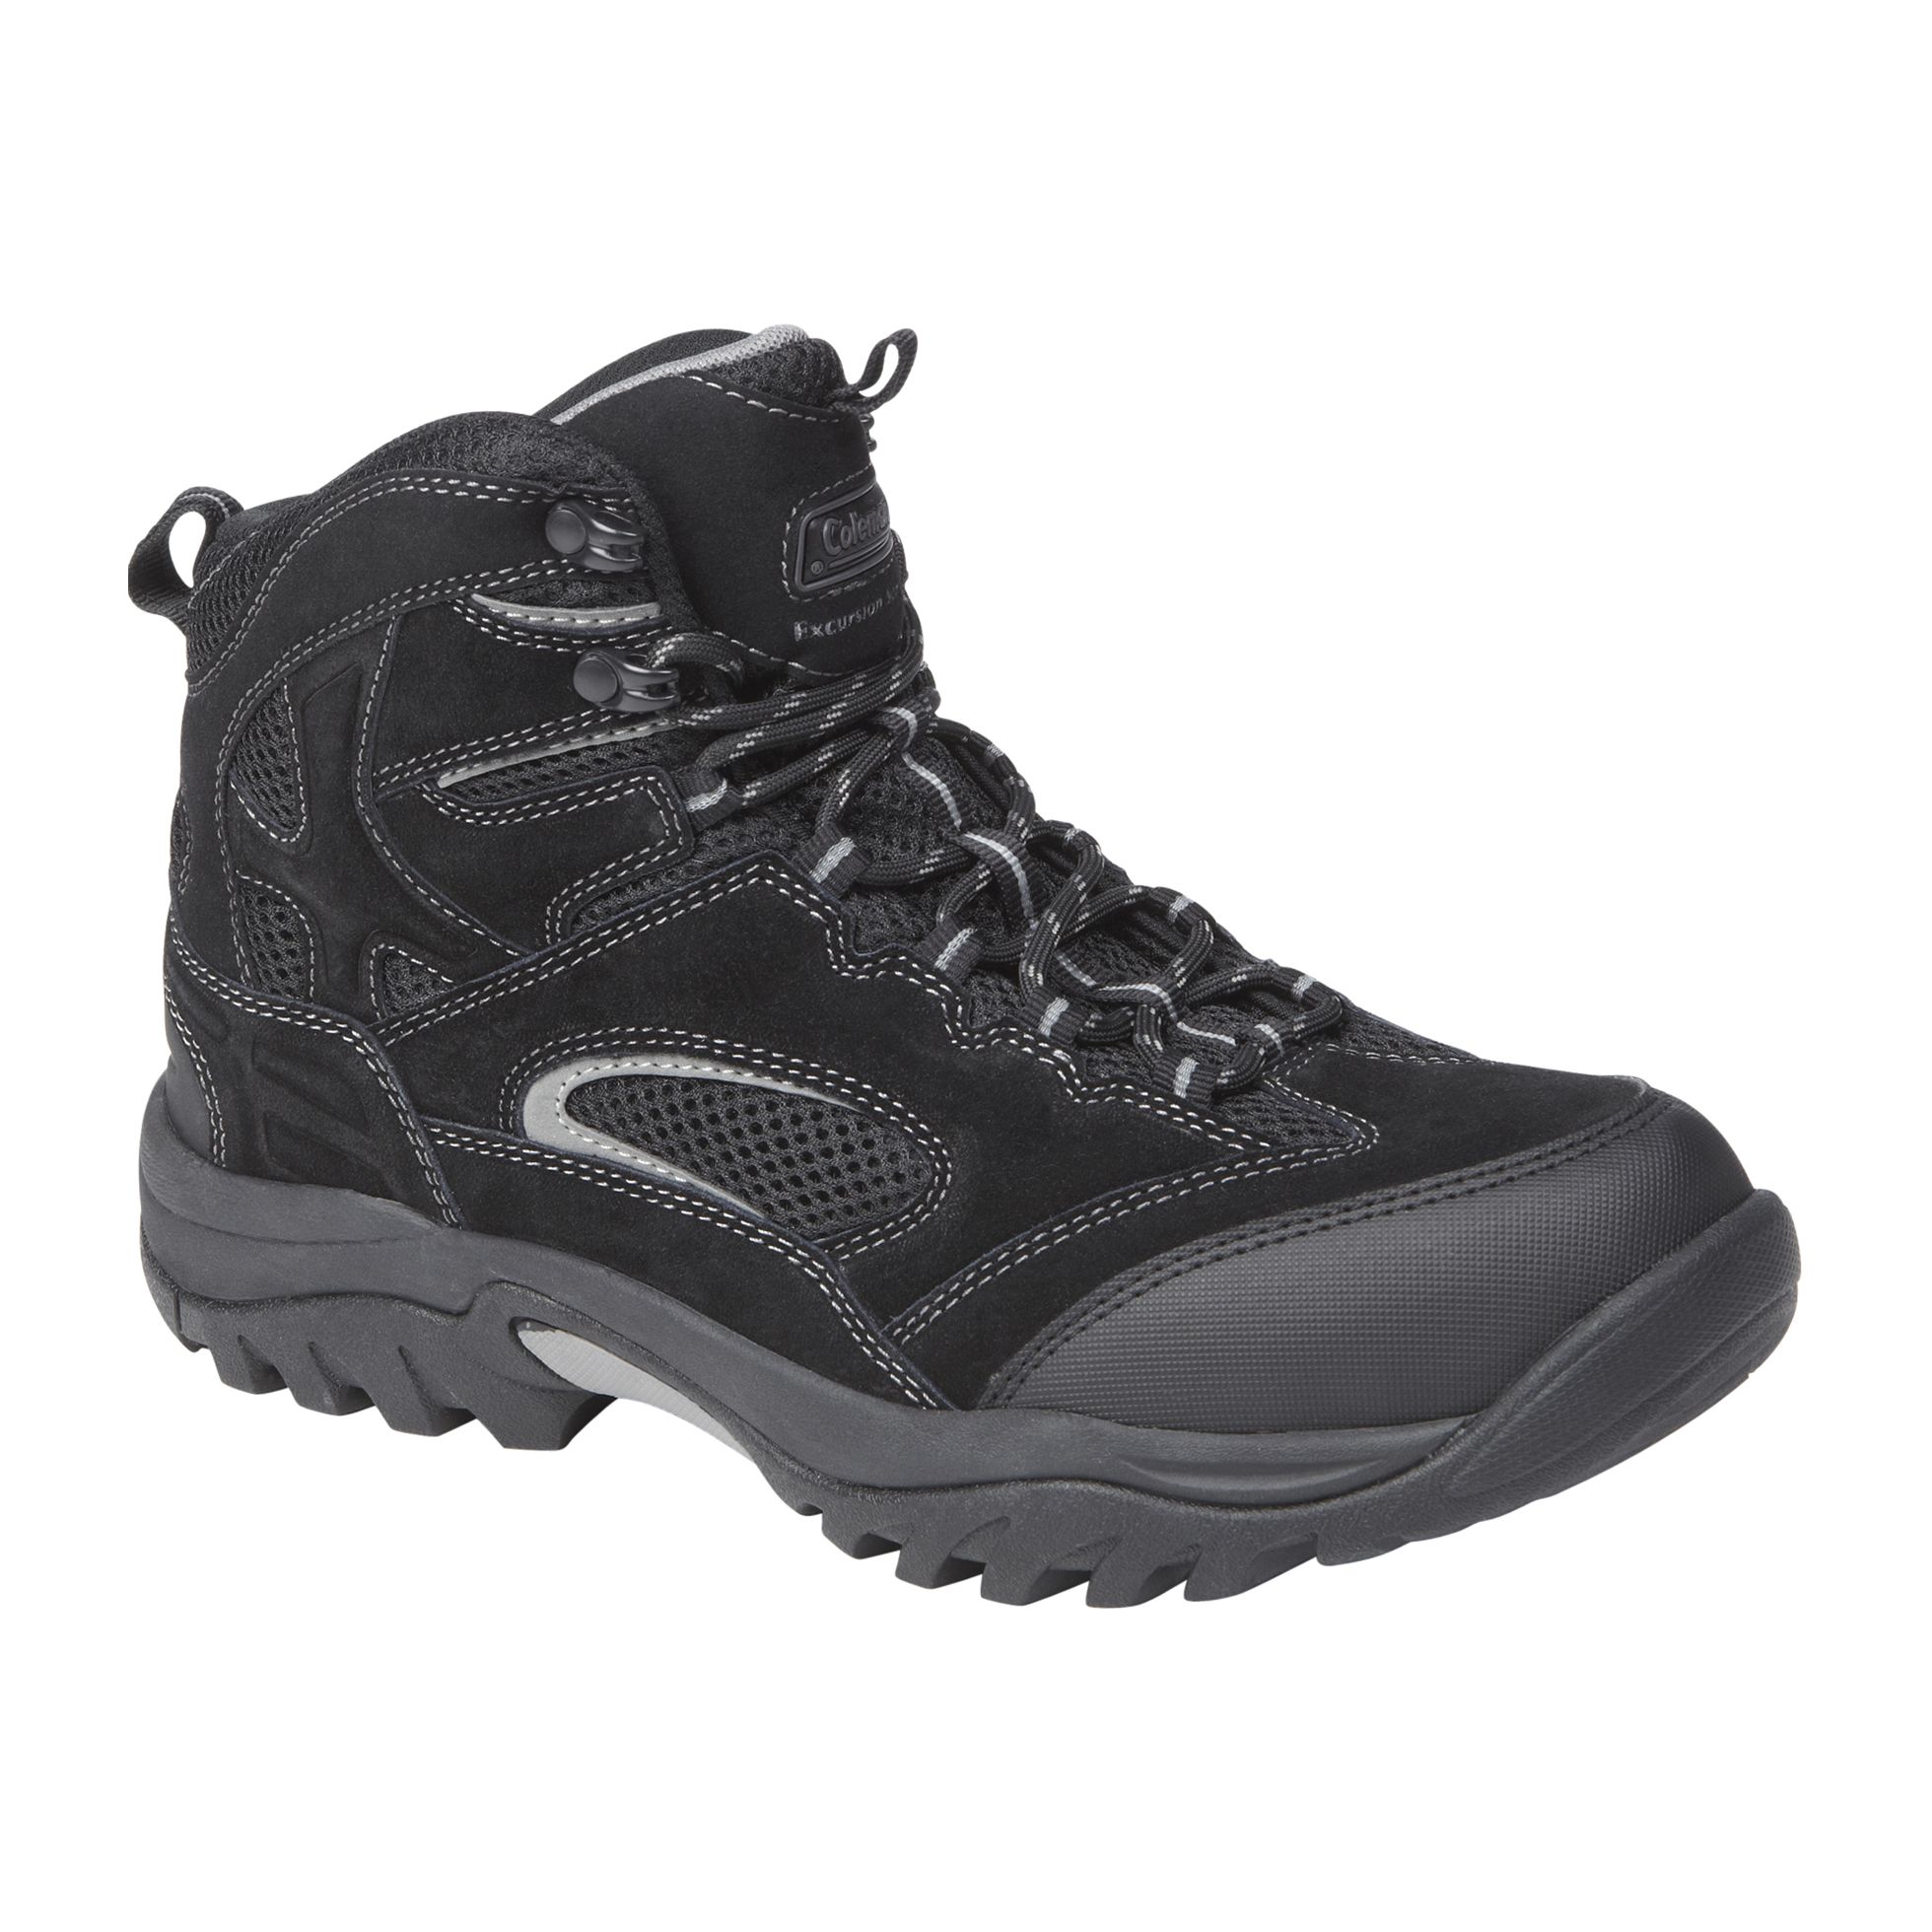 Coleman Men's Karter2 Mid Hiker - Black - Shoes - Men's Shoes - Men's Boots